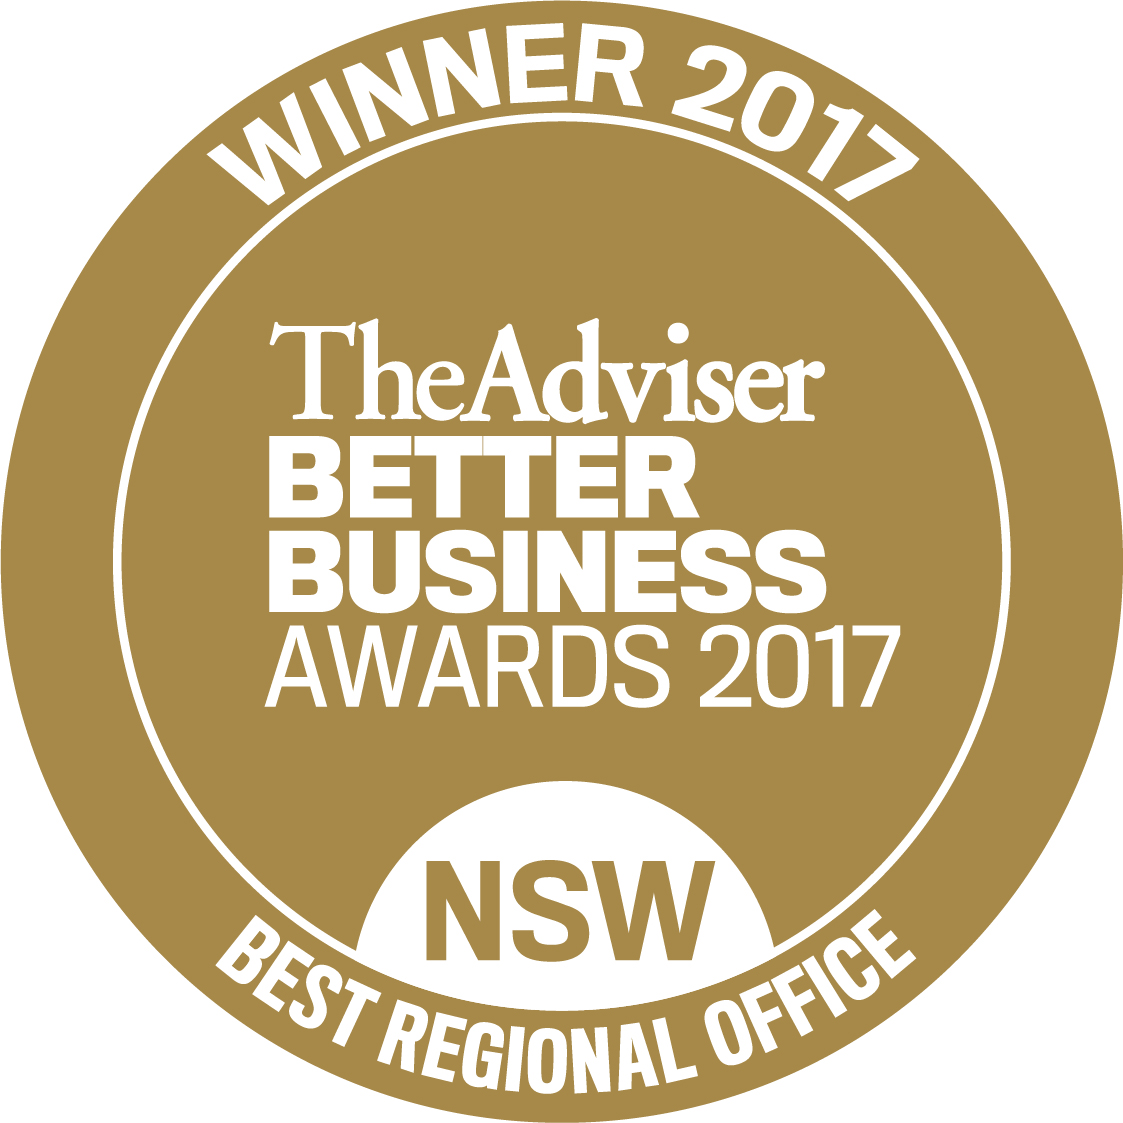 NSW_Best Regional Office.jpg